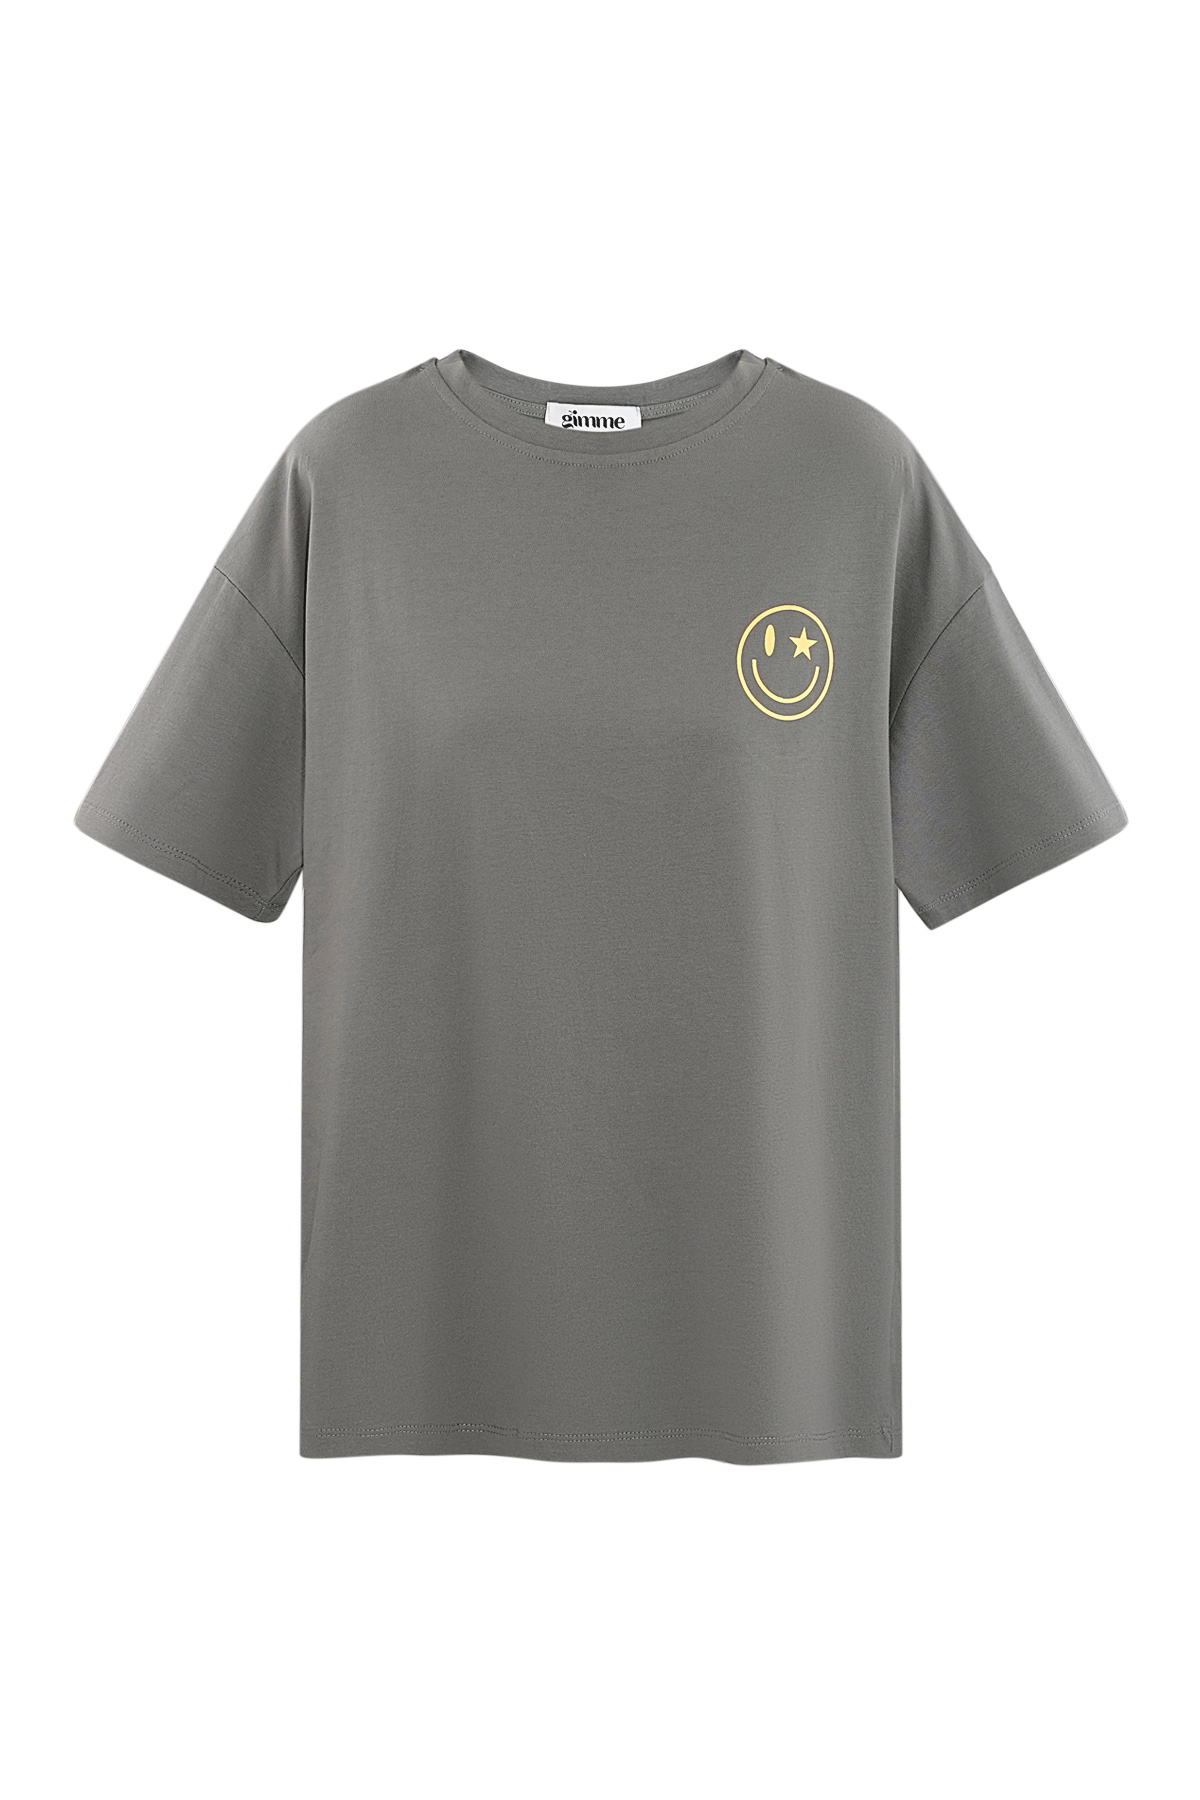 camiseta happy life smiley - gris